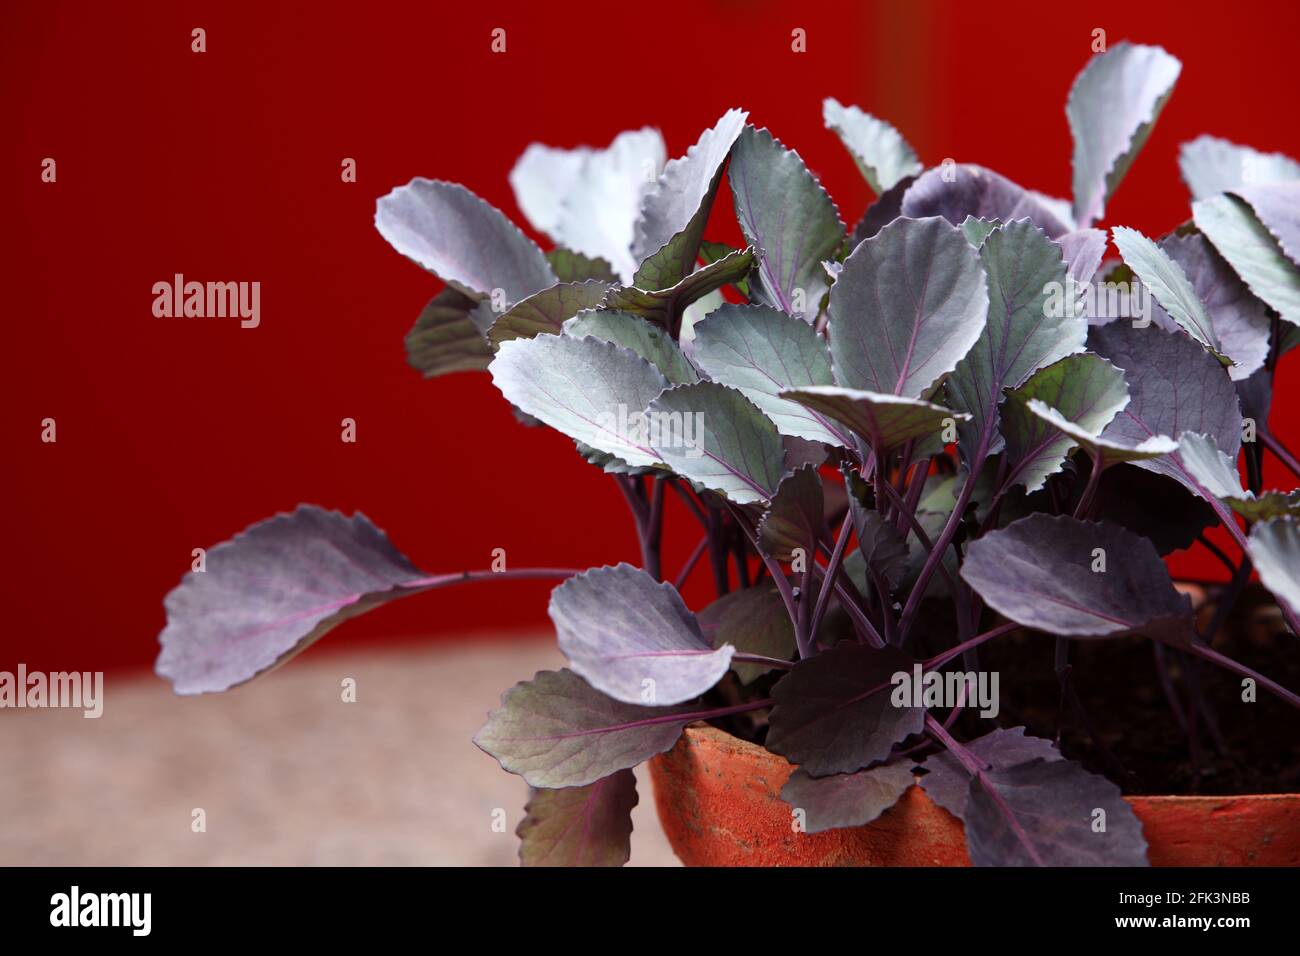 Le piantine di cavolo rosso (Brassica oleracea var. Capitata F. rubra) è una sorta di cavolo, noto anche come cavolo viola, cavolo rosso, o kraut blu in ki Foto Stock